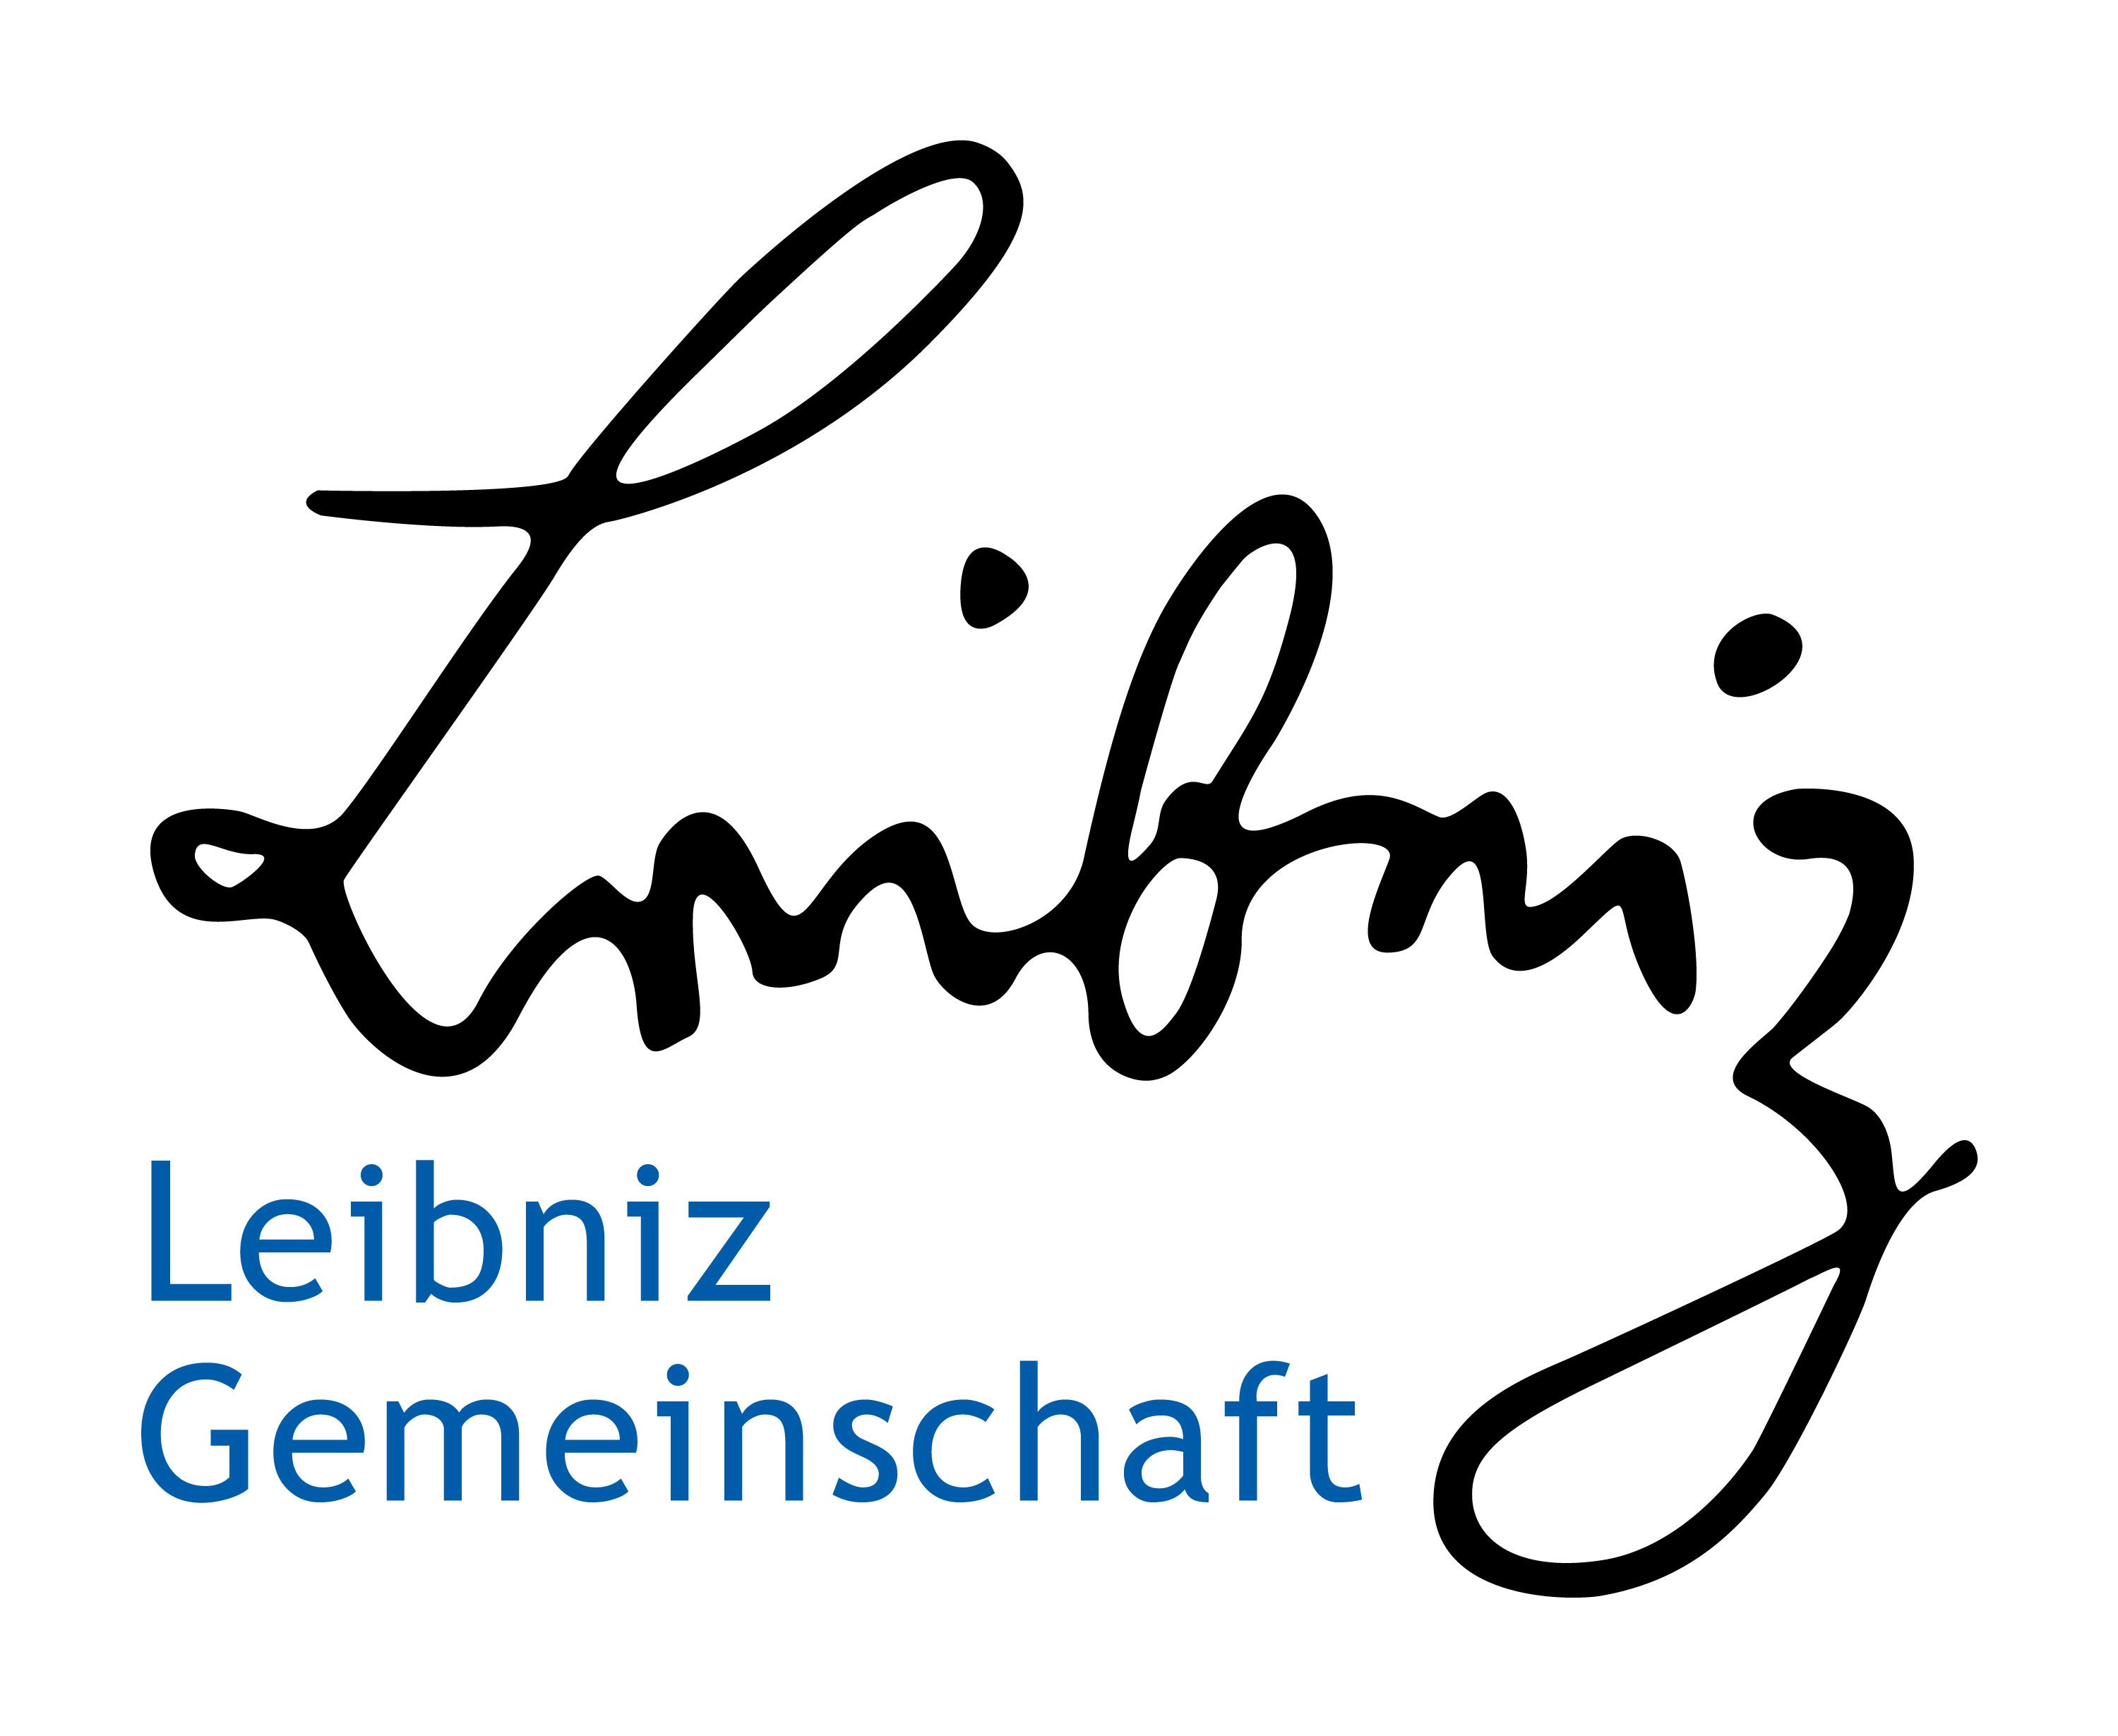 Leibniz__Logo_DE_Blau-Schwarz.jpg